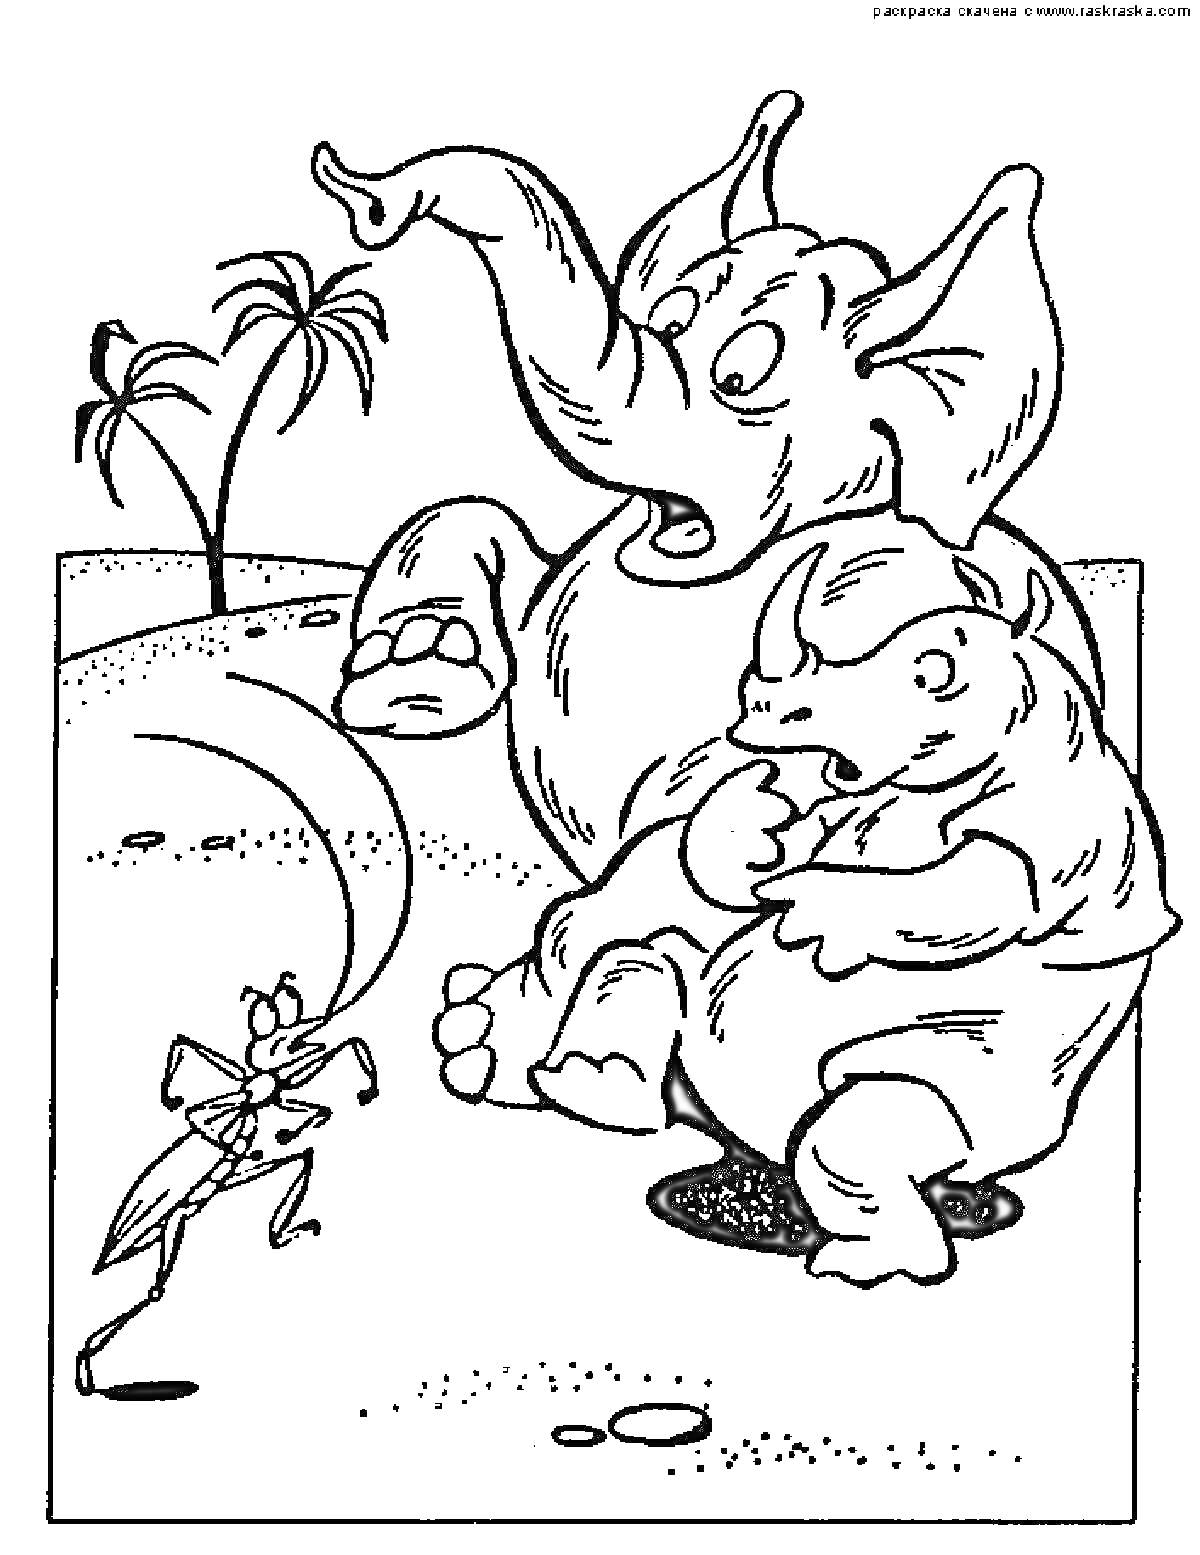 РаскраскаСцена с тараканом, слоном и носорогом на фоне пальм